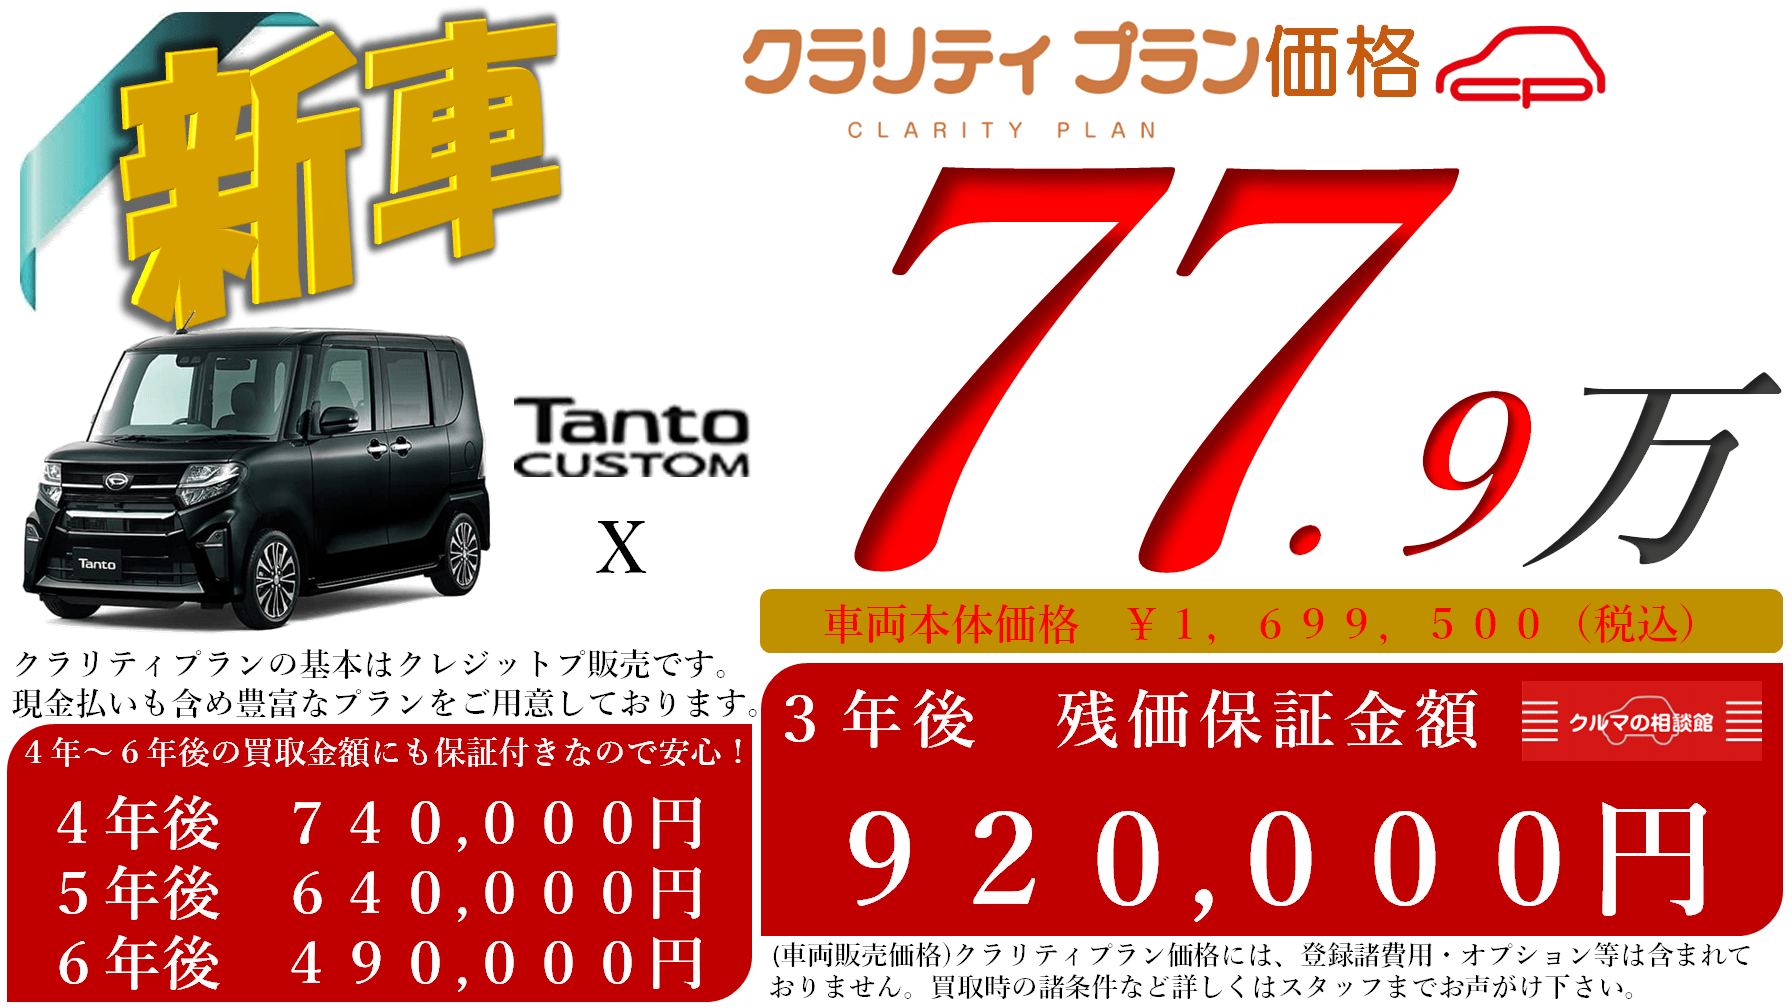 新車 Tanto CUSTOM X クラリティプラン価格 77.9万